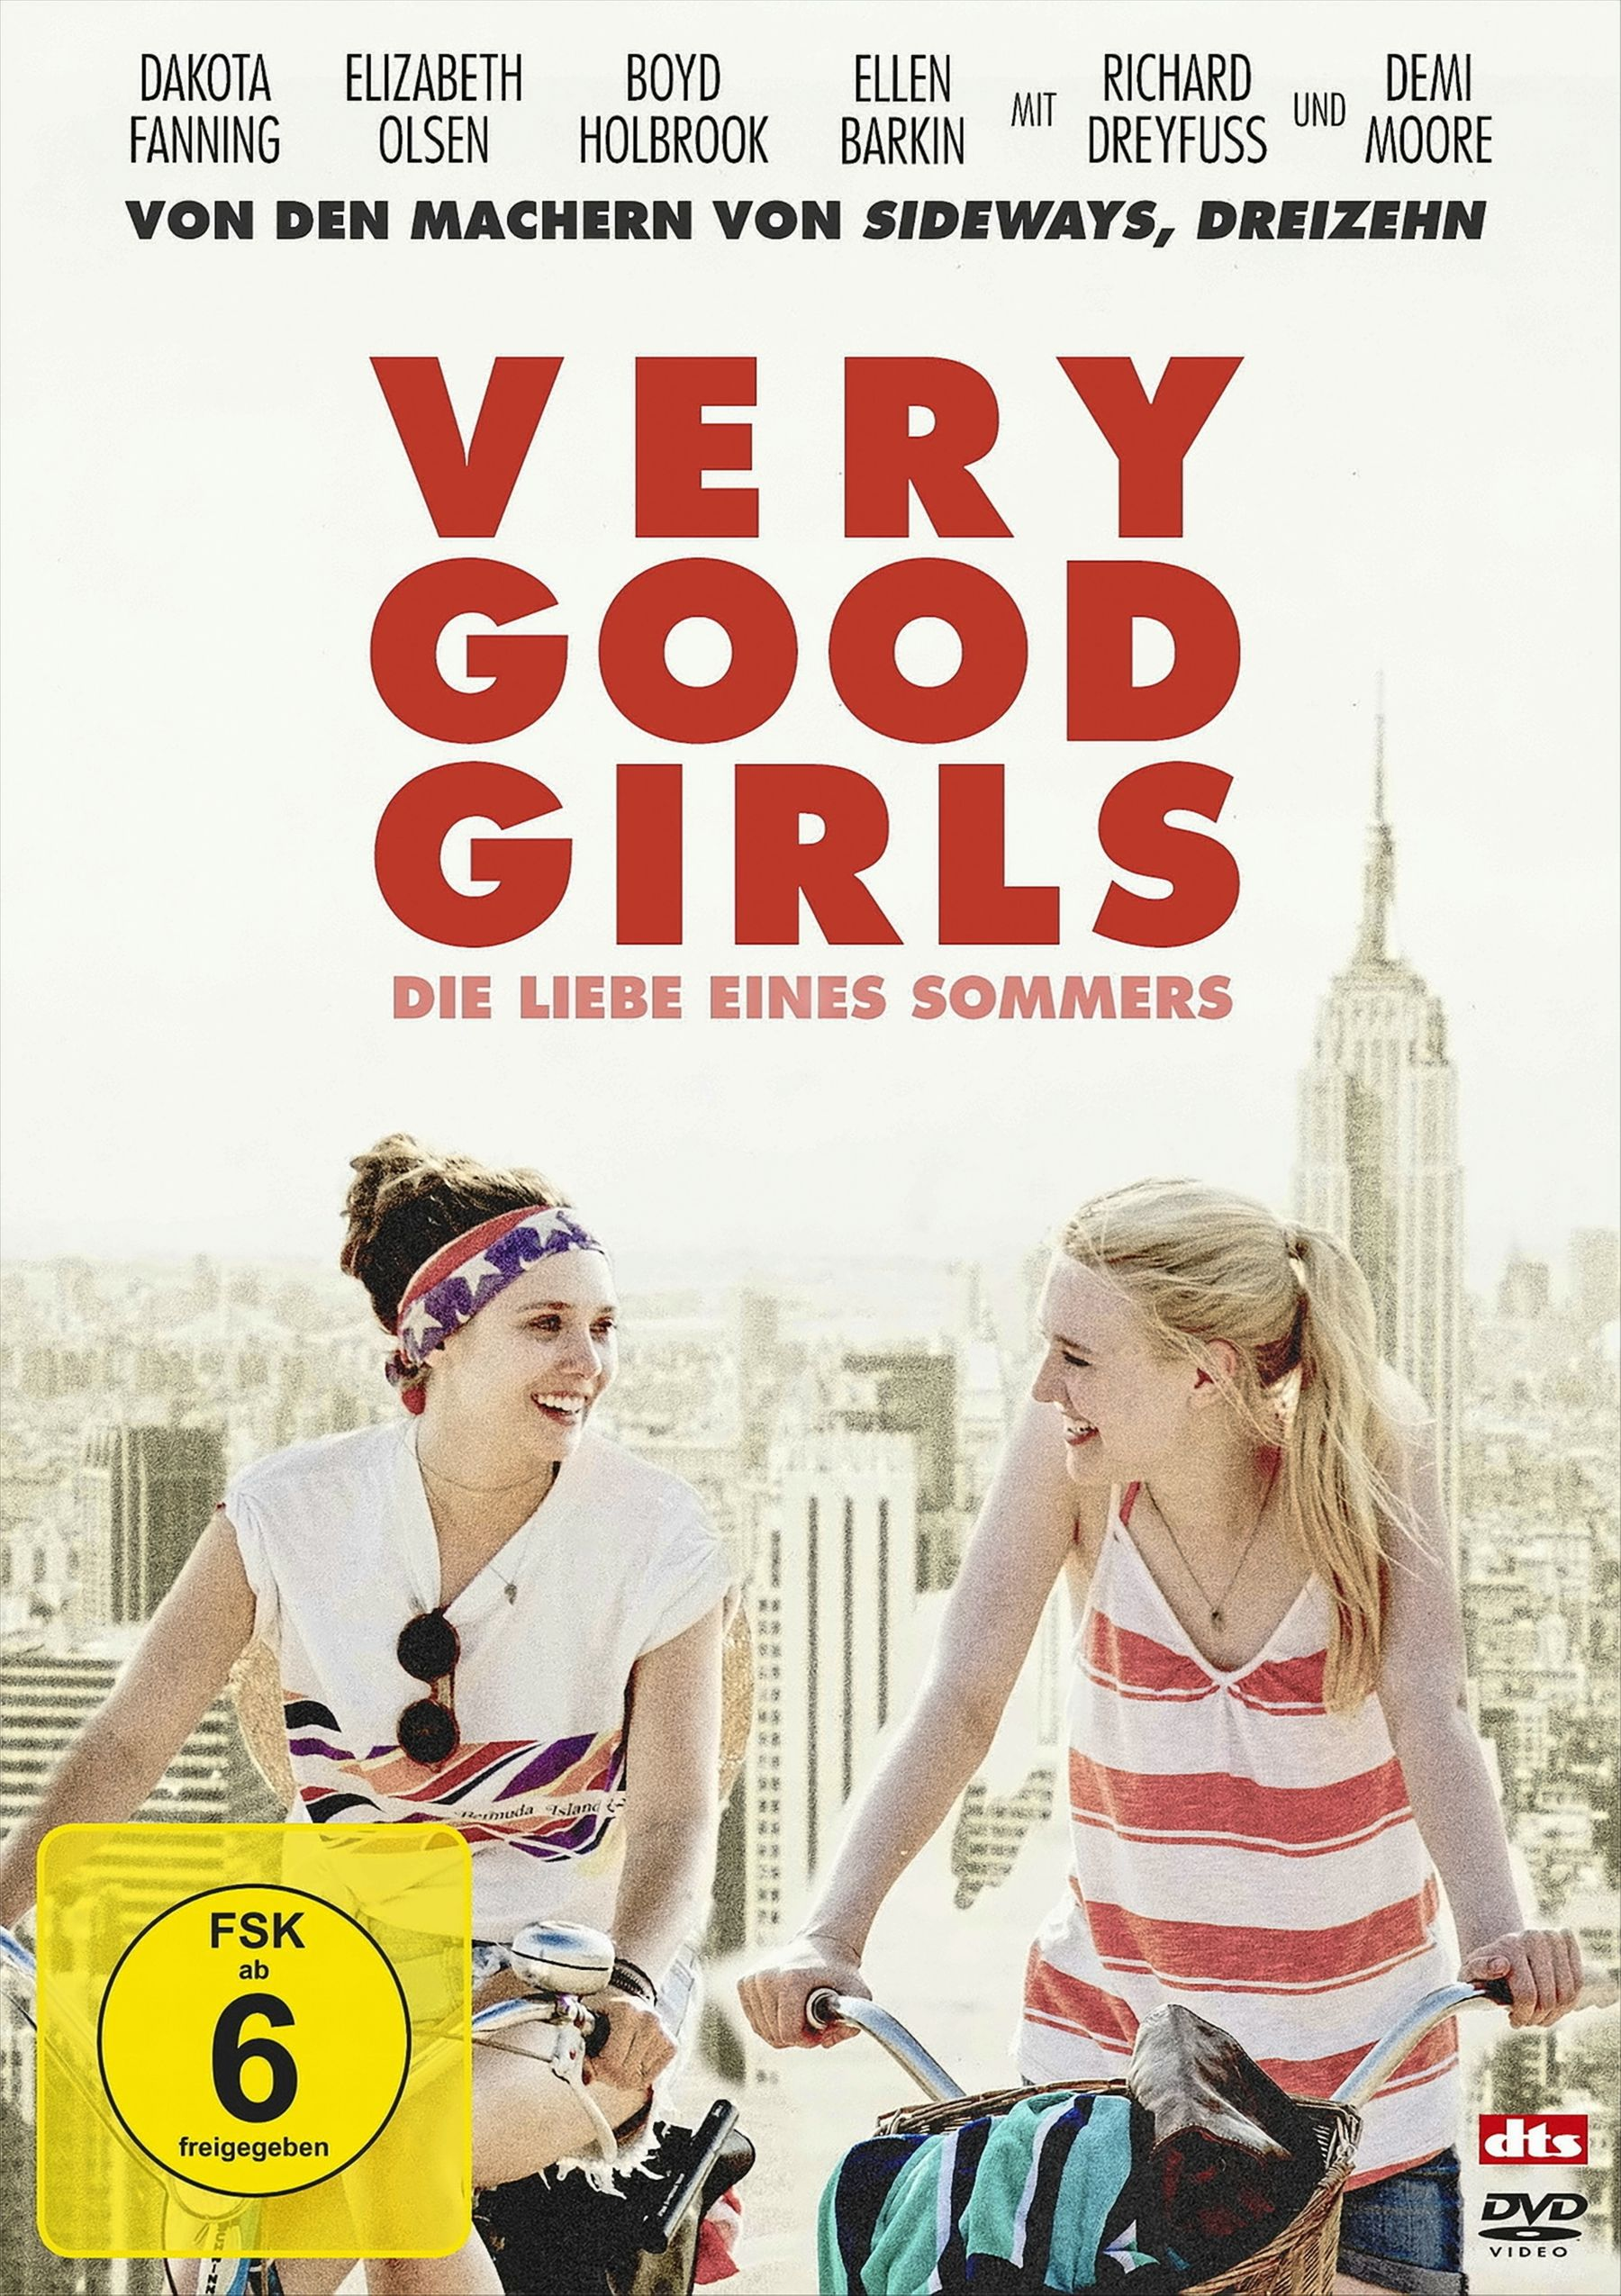 Girls DVD - Liebe Very Good eines Die Sommers